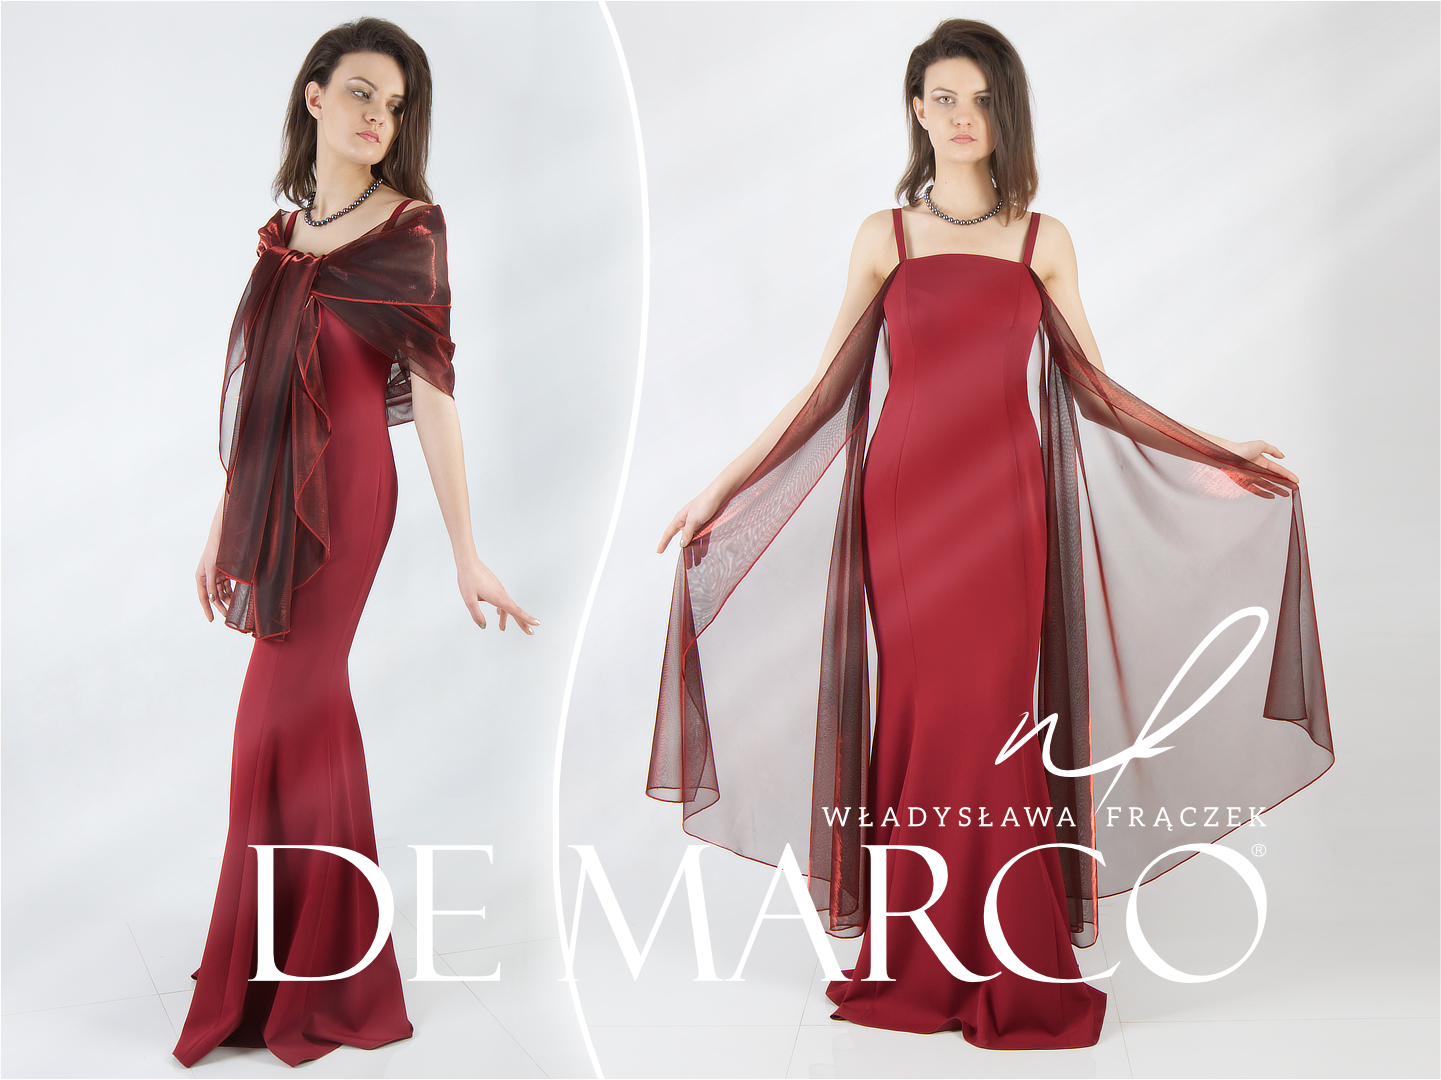 Wieczorowe suknie De Marco polski producent ekskluzywnej odzieży damskiej